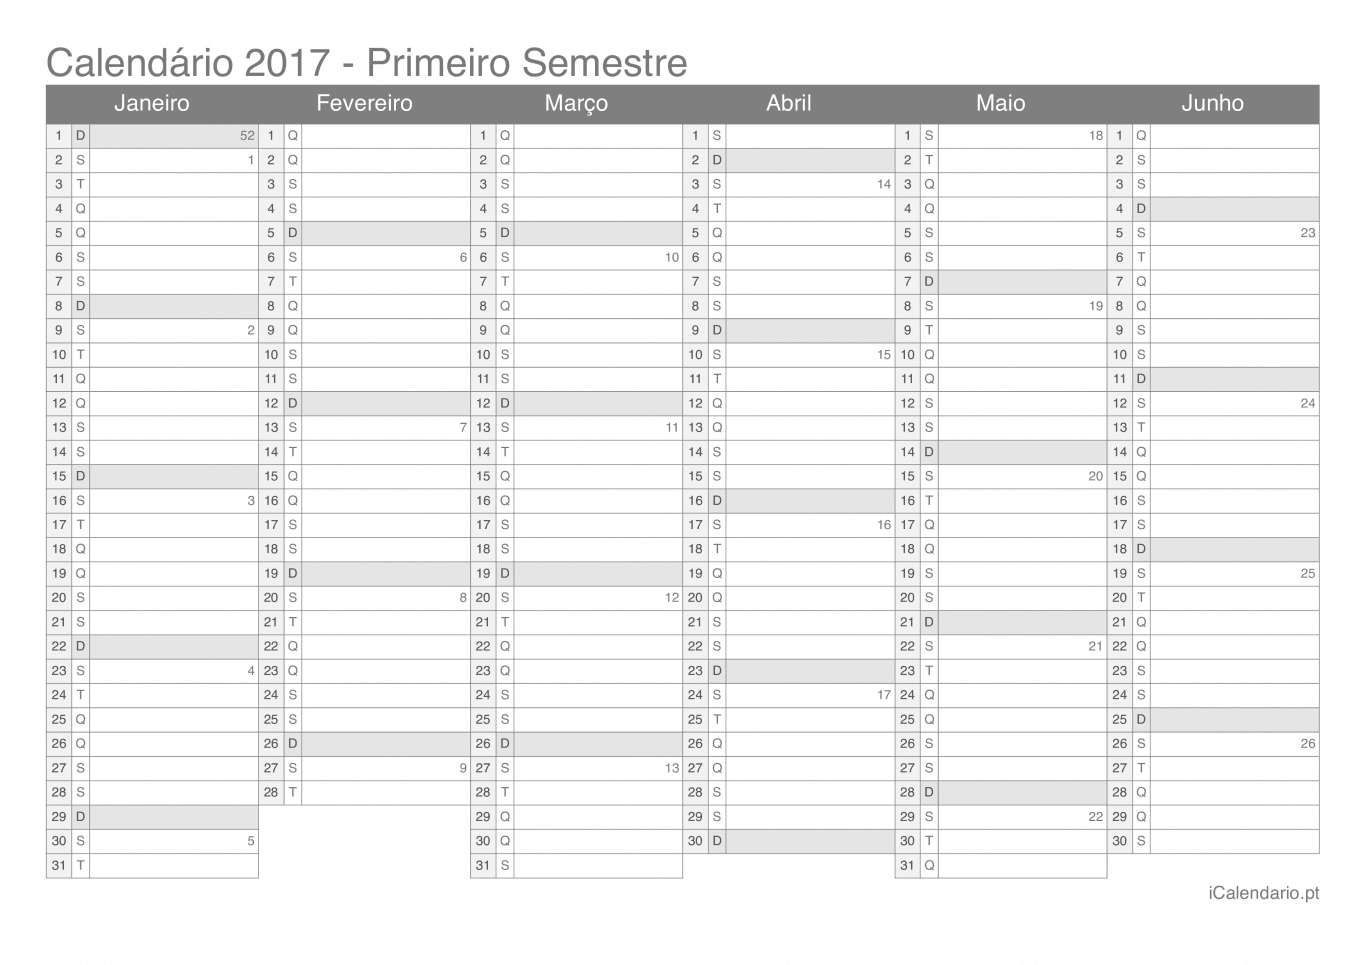 Calendário por semestre com números da semana 2017